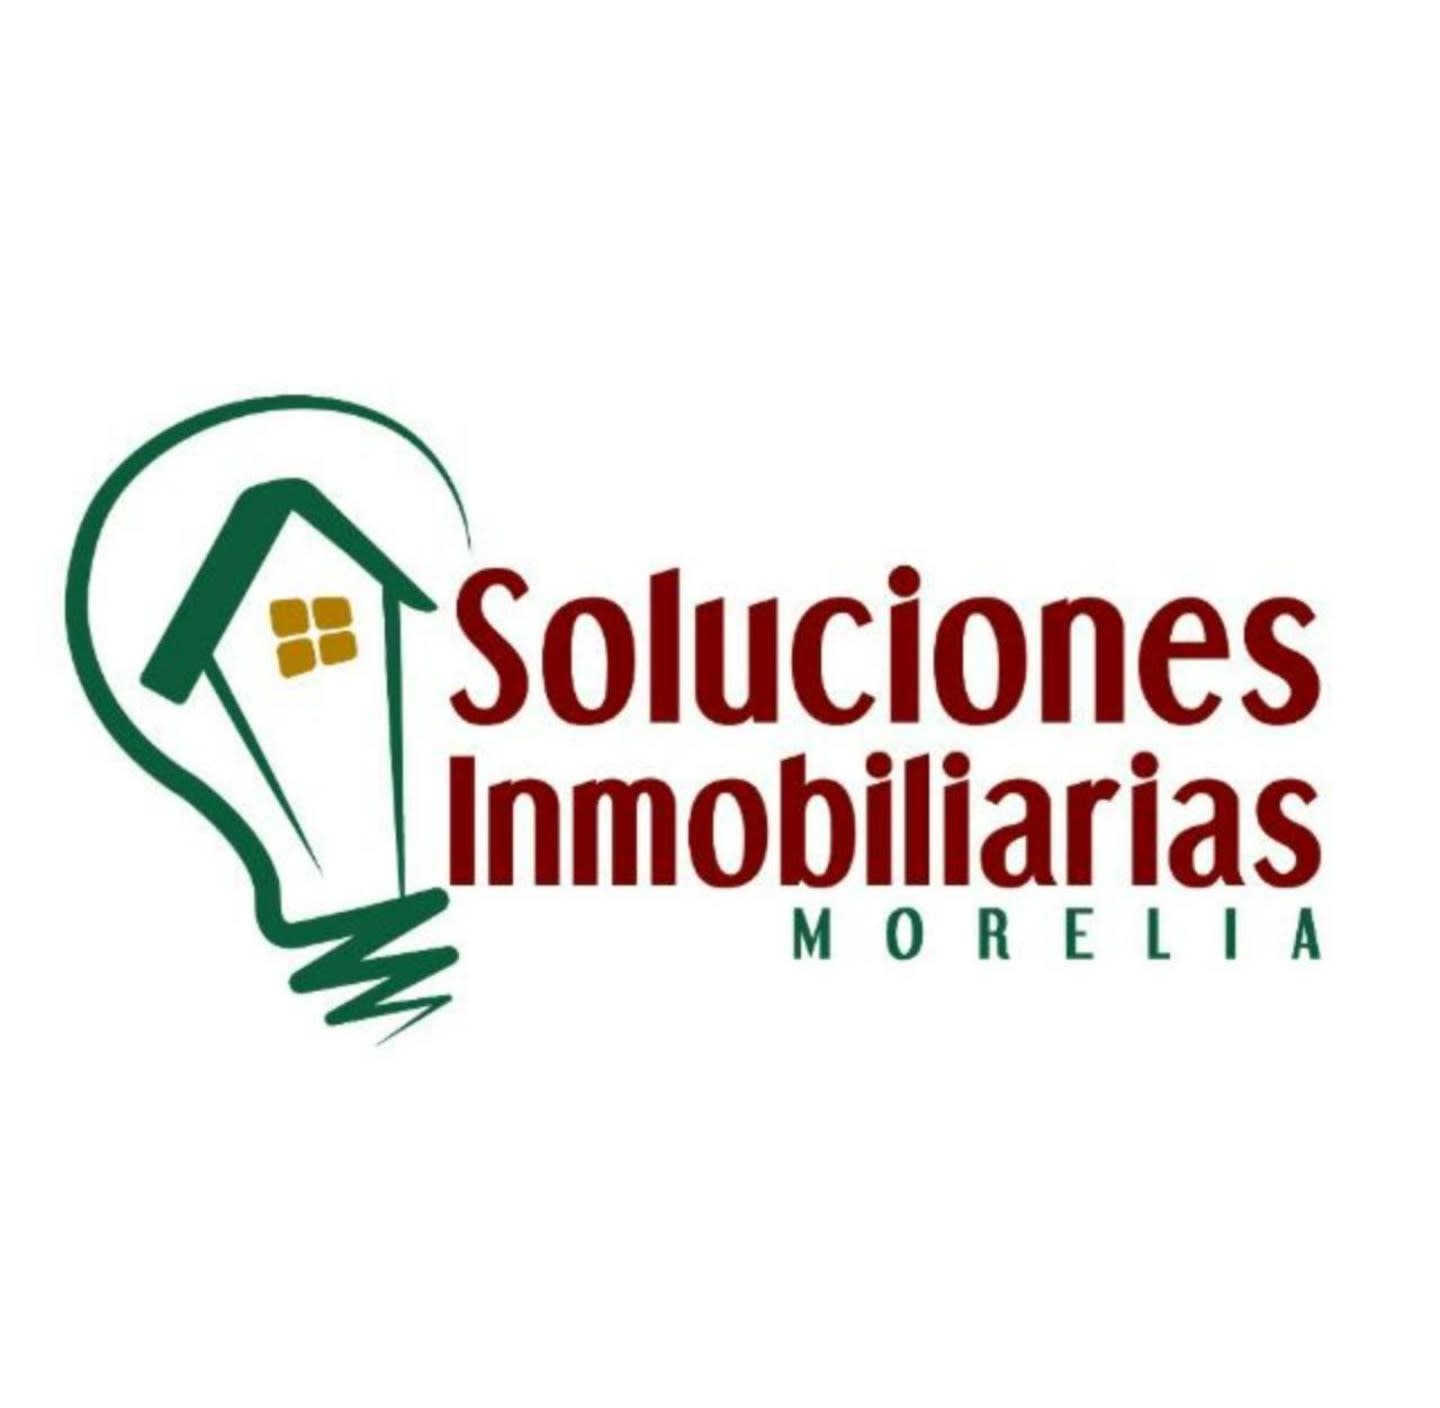 Soluciones Inmobiliarias Morelia